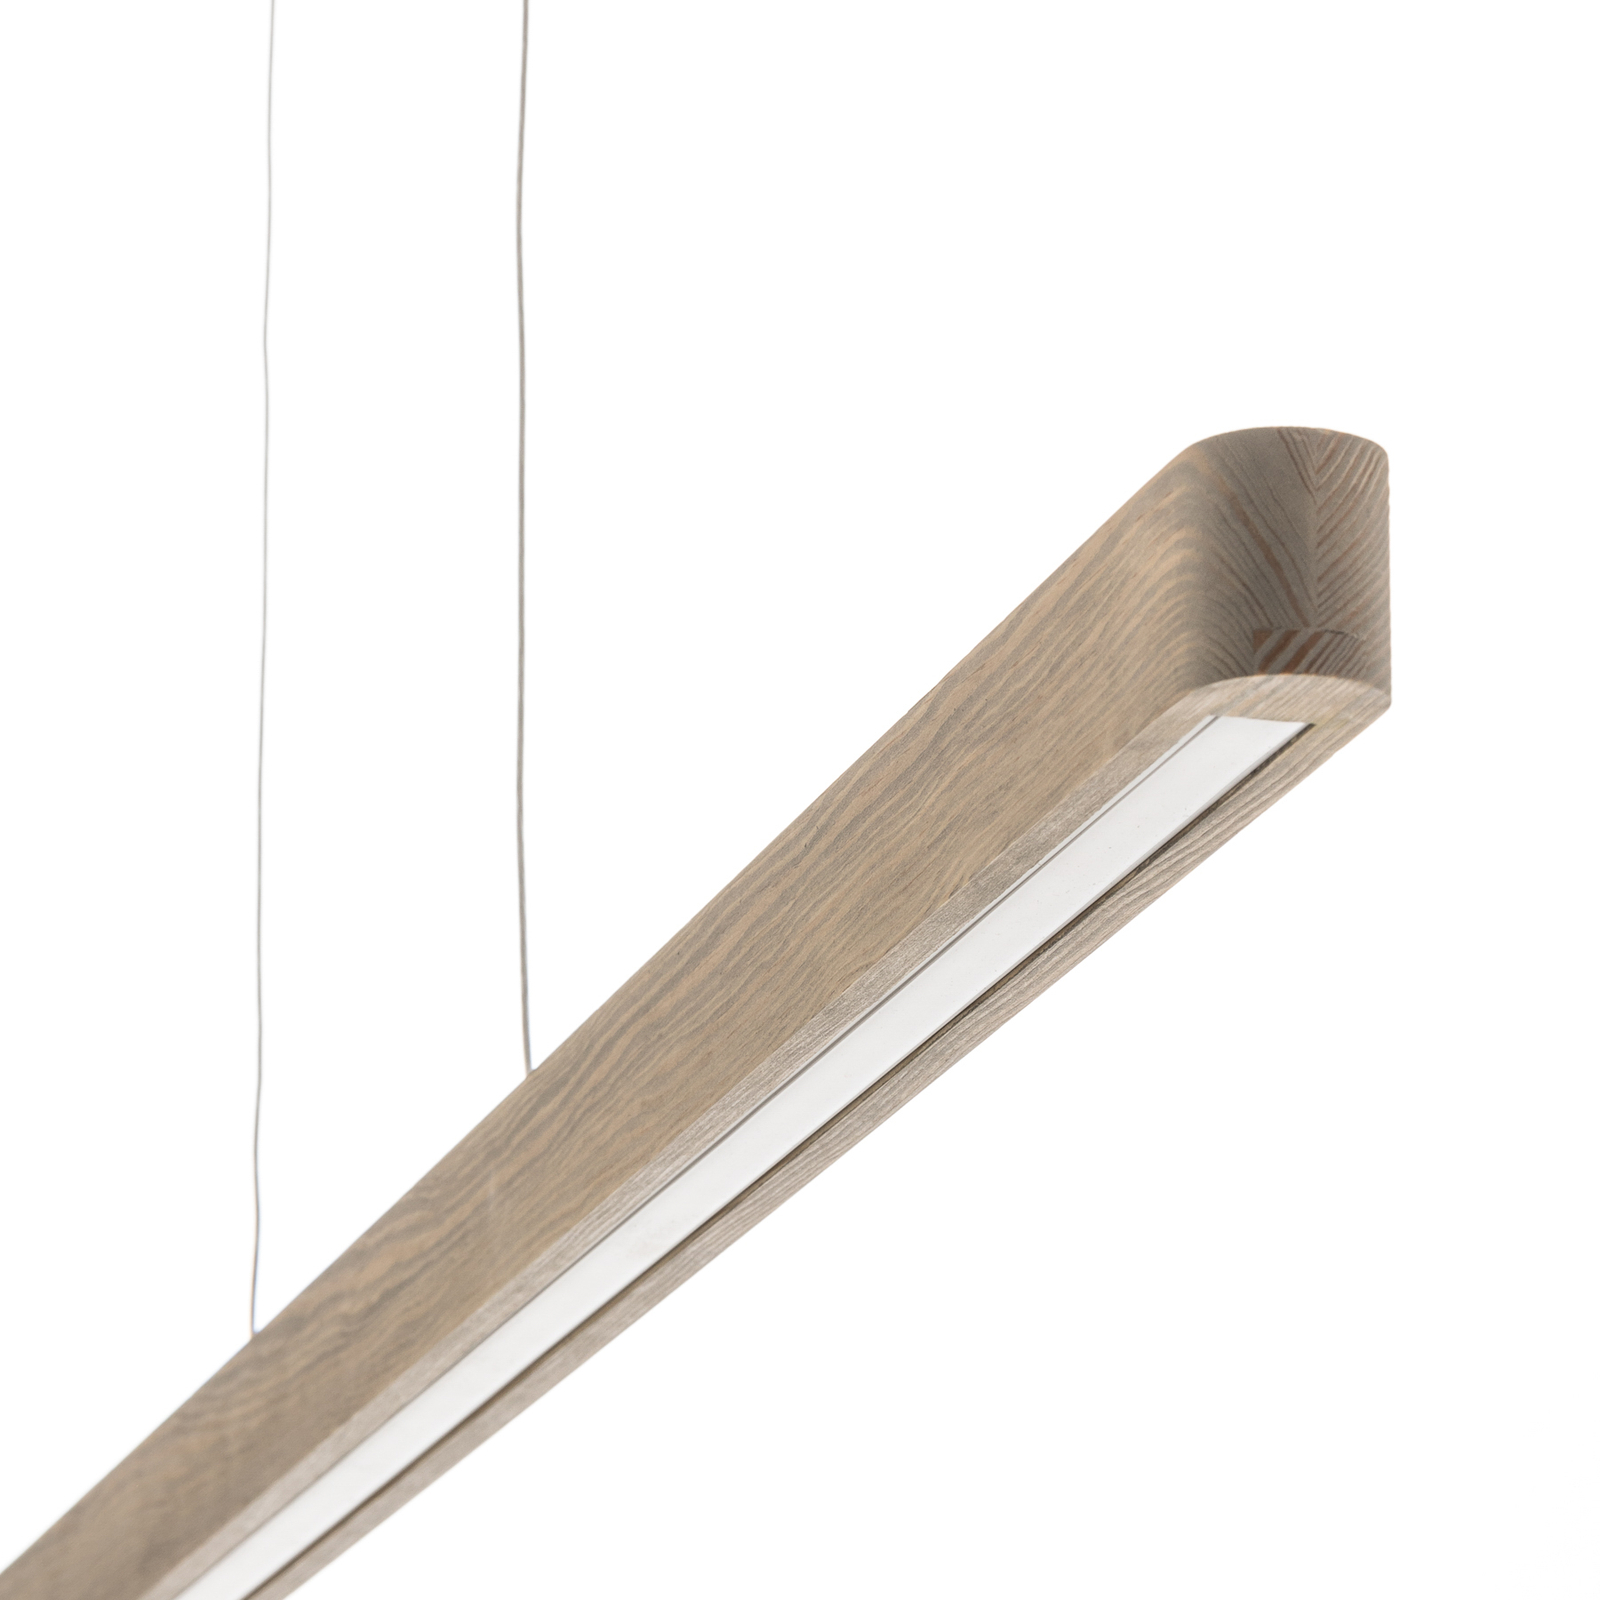 LED-hengelampe Forrestal, 120 cm lang